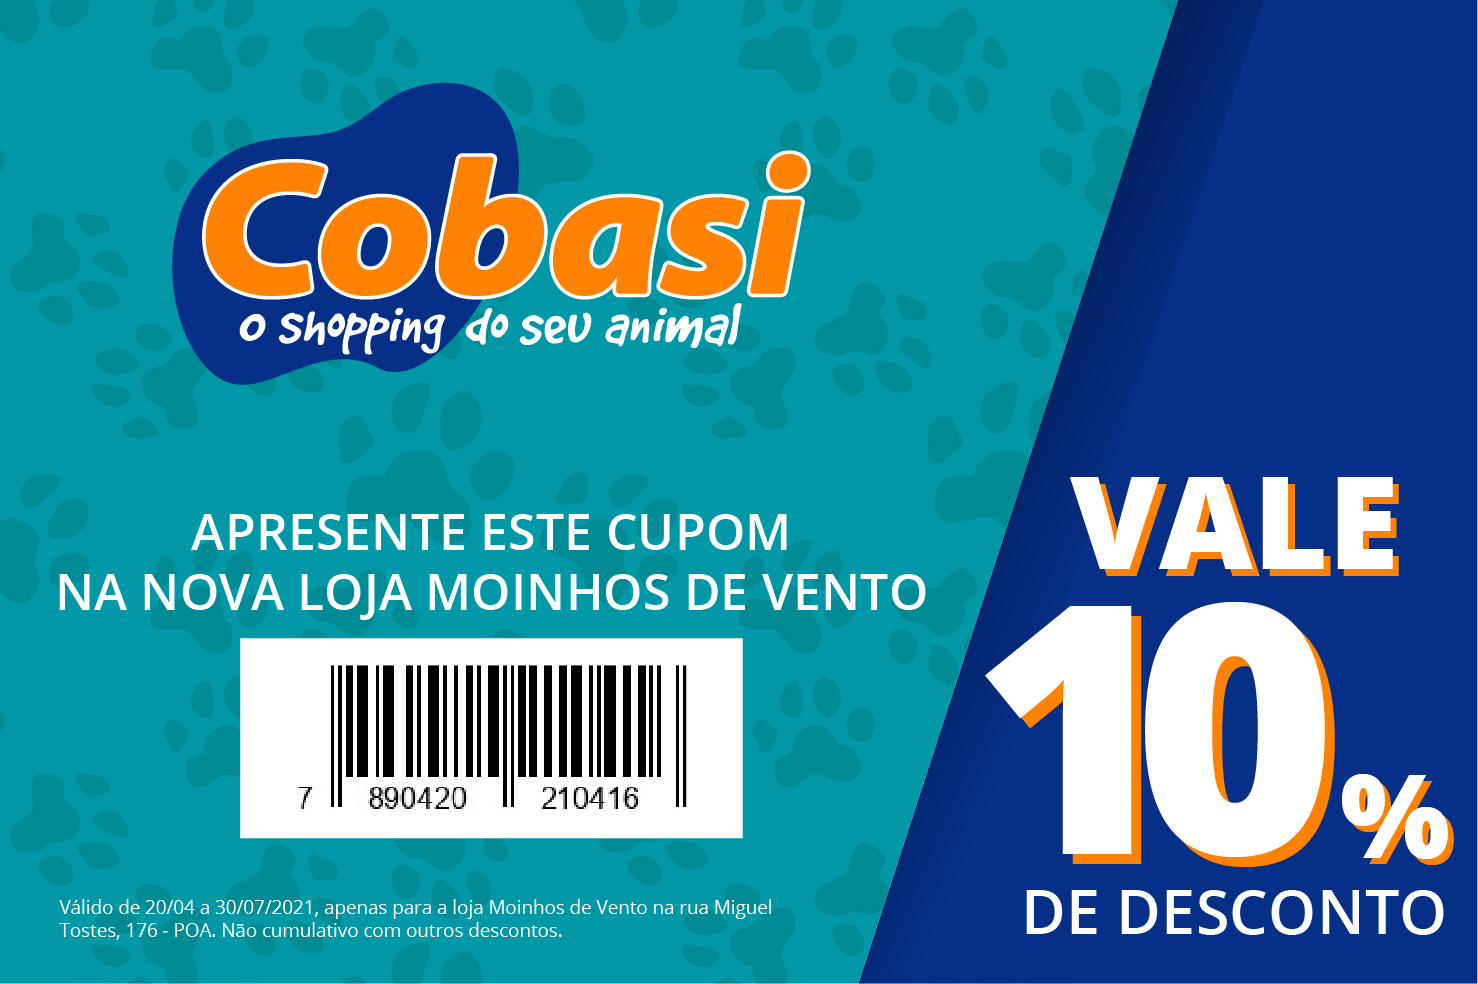 Cobasi Porto Alegre: รับส่วนลด 10% ที่ร้าน Moinhos de Vento